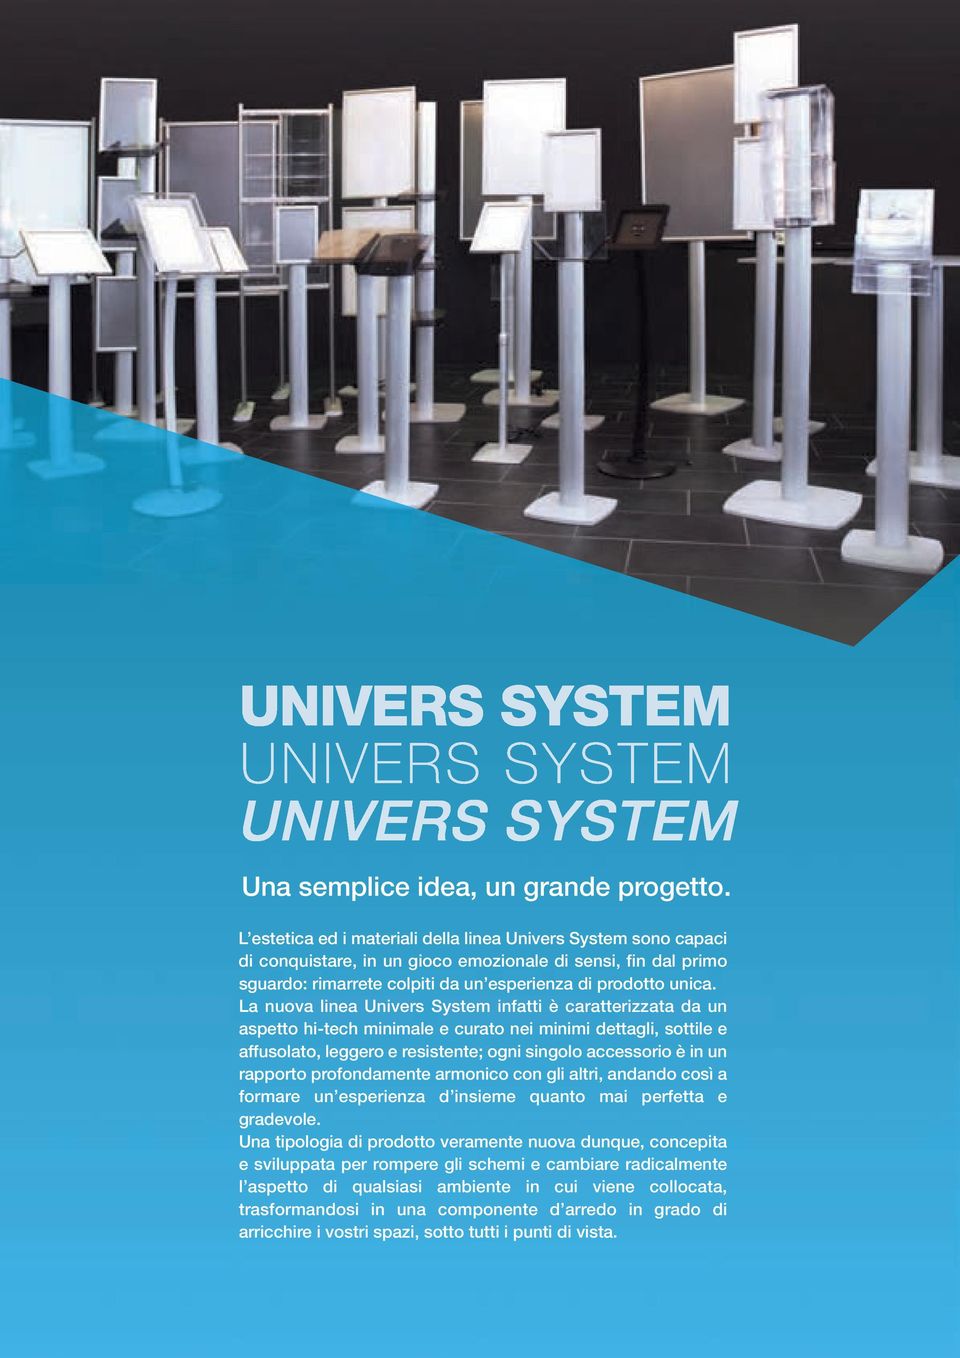 La nuova linea Univers System infatti è caratterizzata da un aspetto hi-tech minimale e curato nei minimi dettagli, sottile e affusolato, leggero e resistente; ogni singolo accessorio è in un